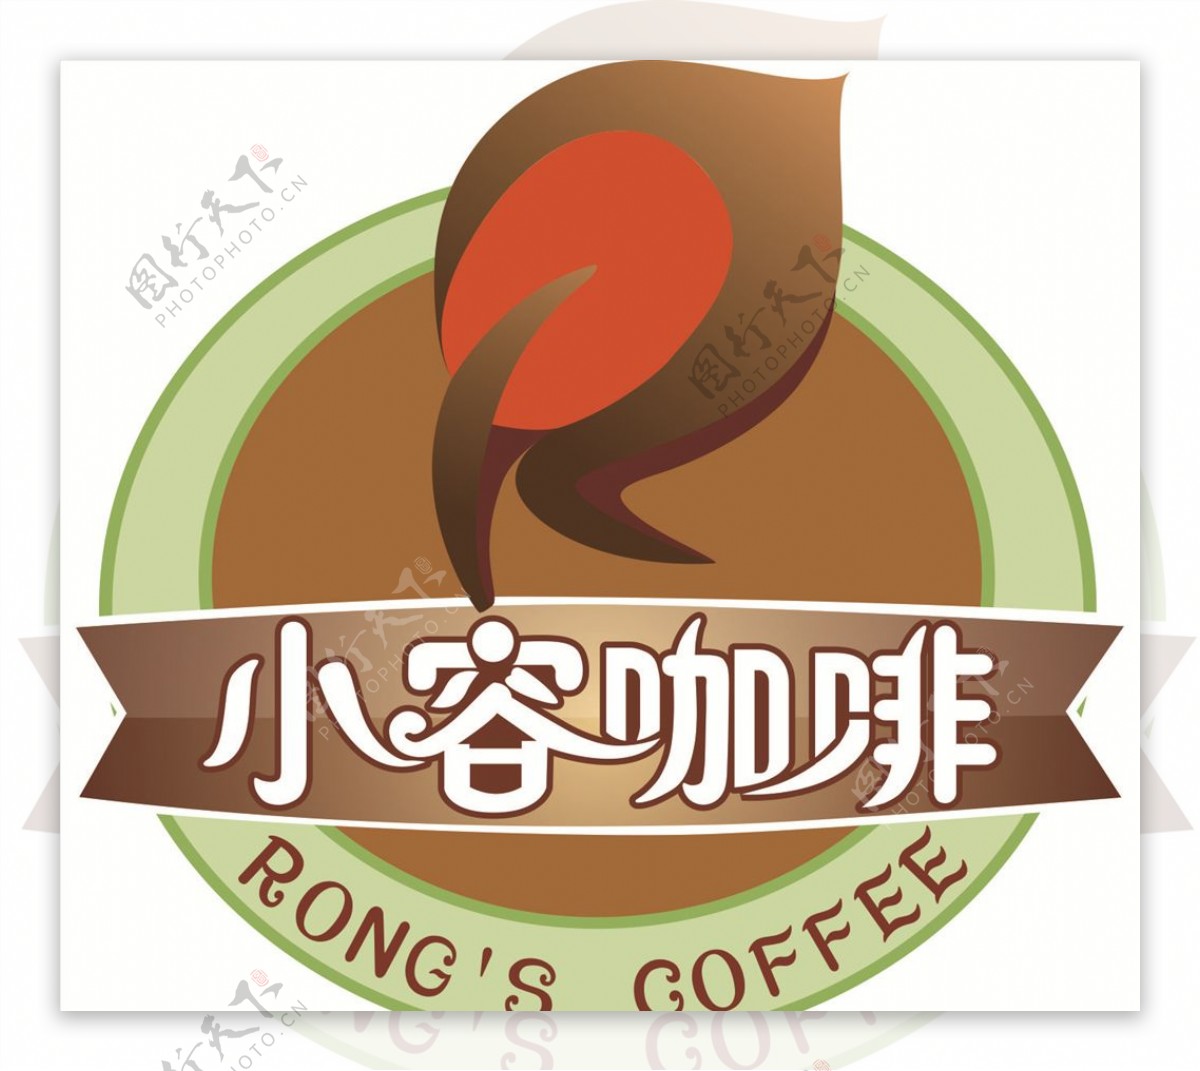 小容咖啡logo